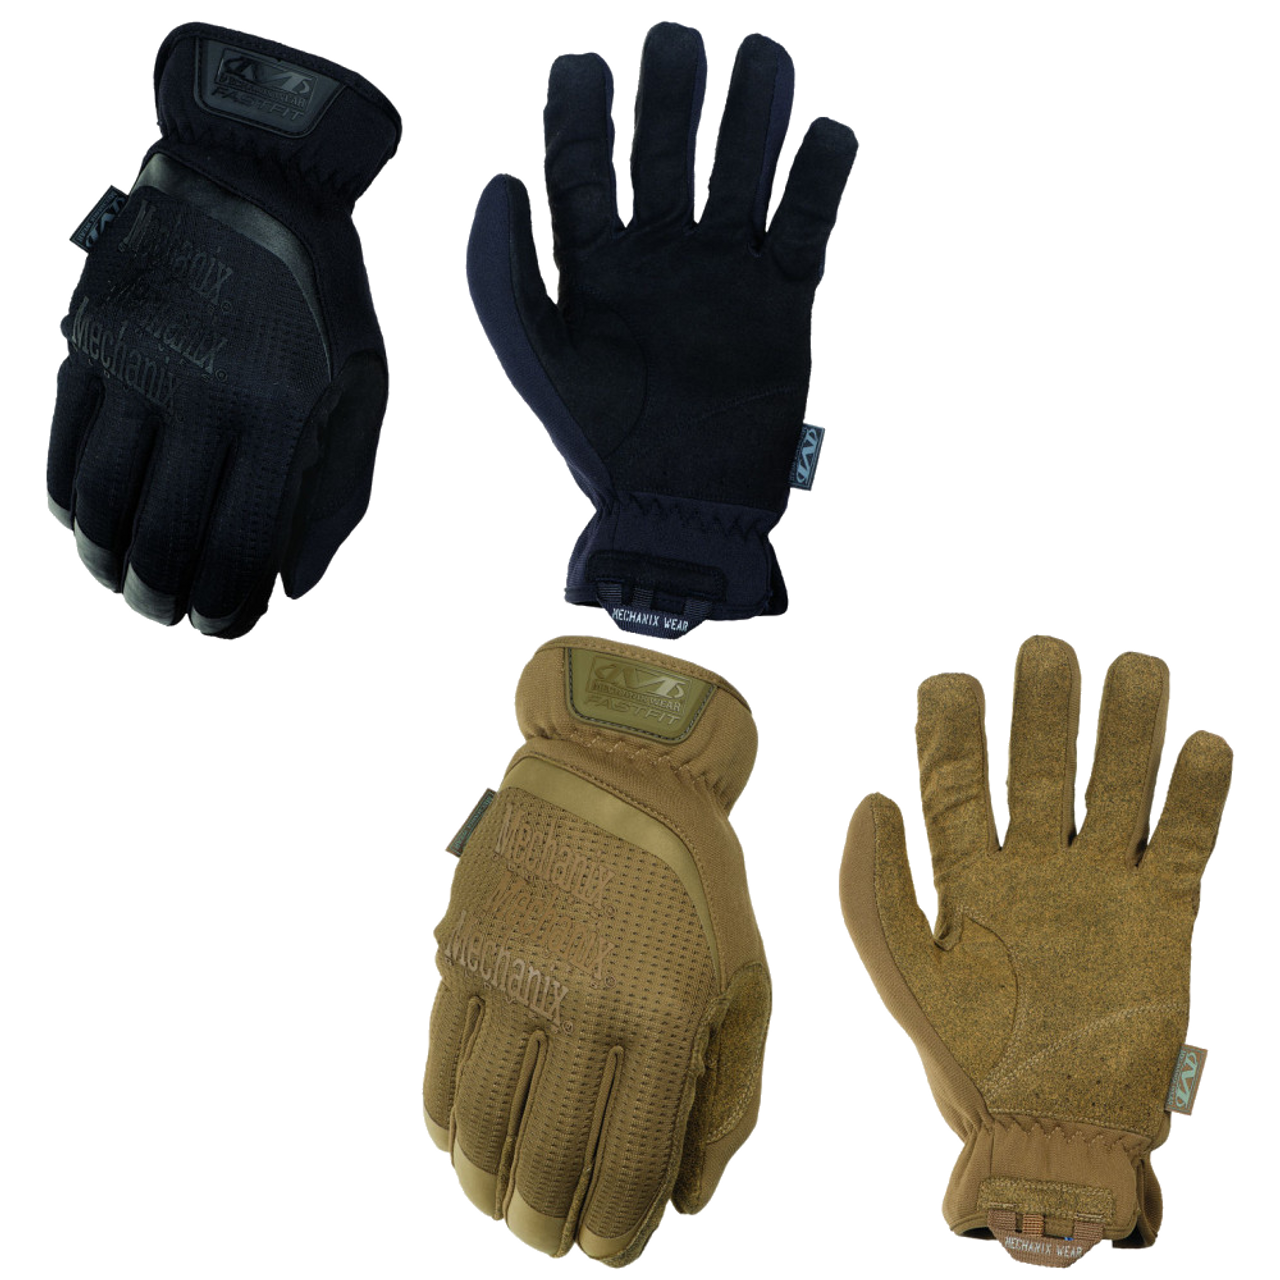 MECHANIX WEAR Fastfit Glove - Coyote & Black